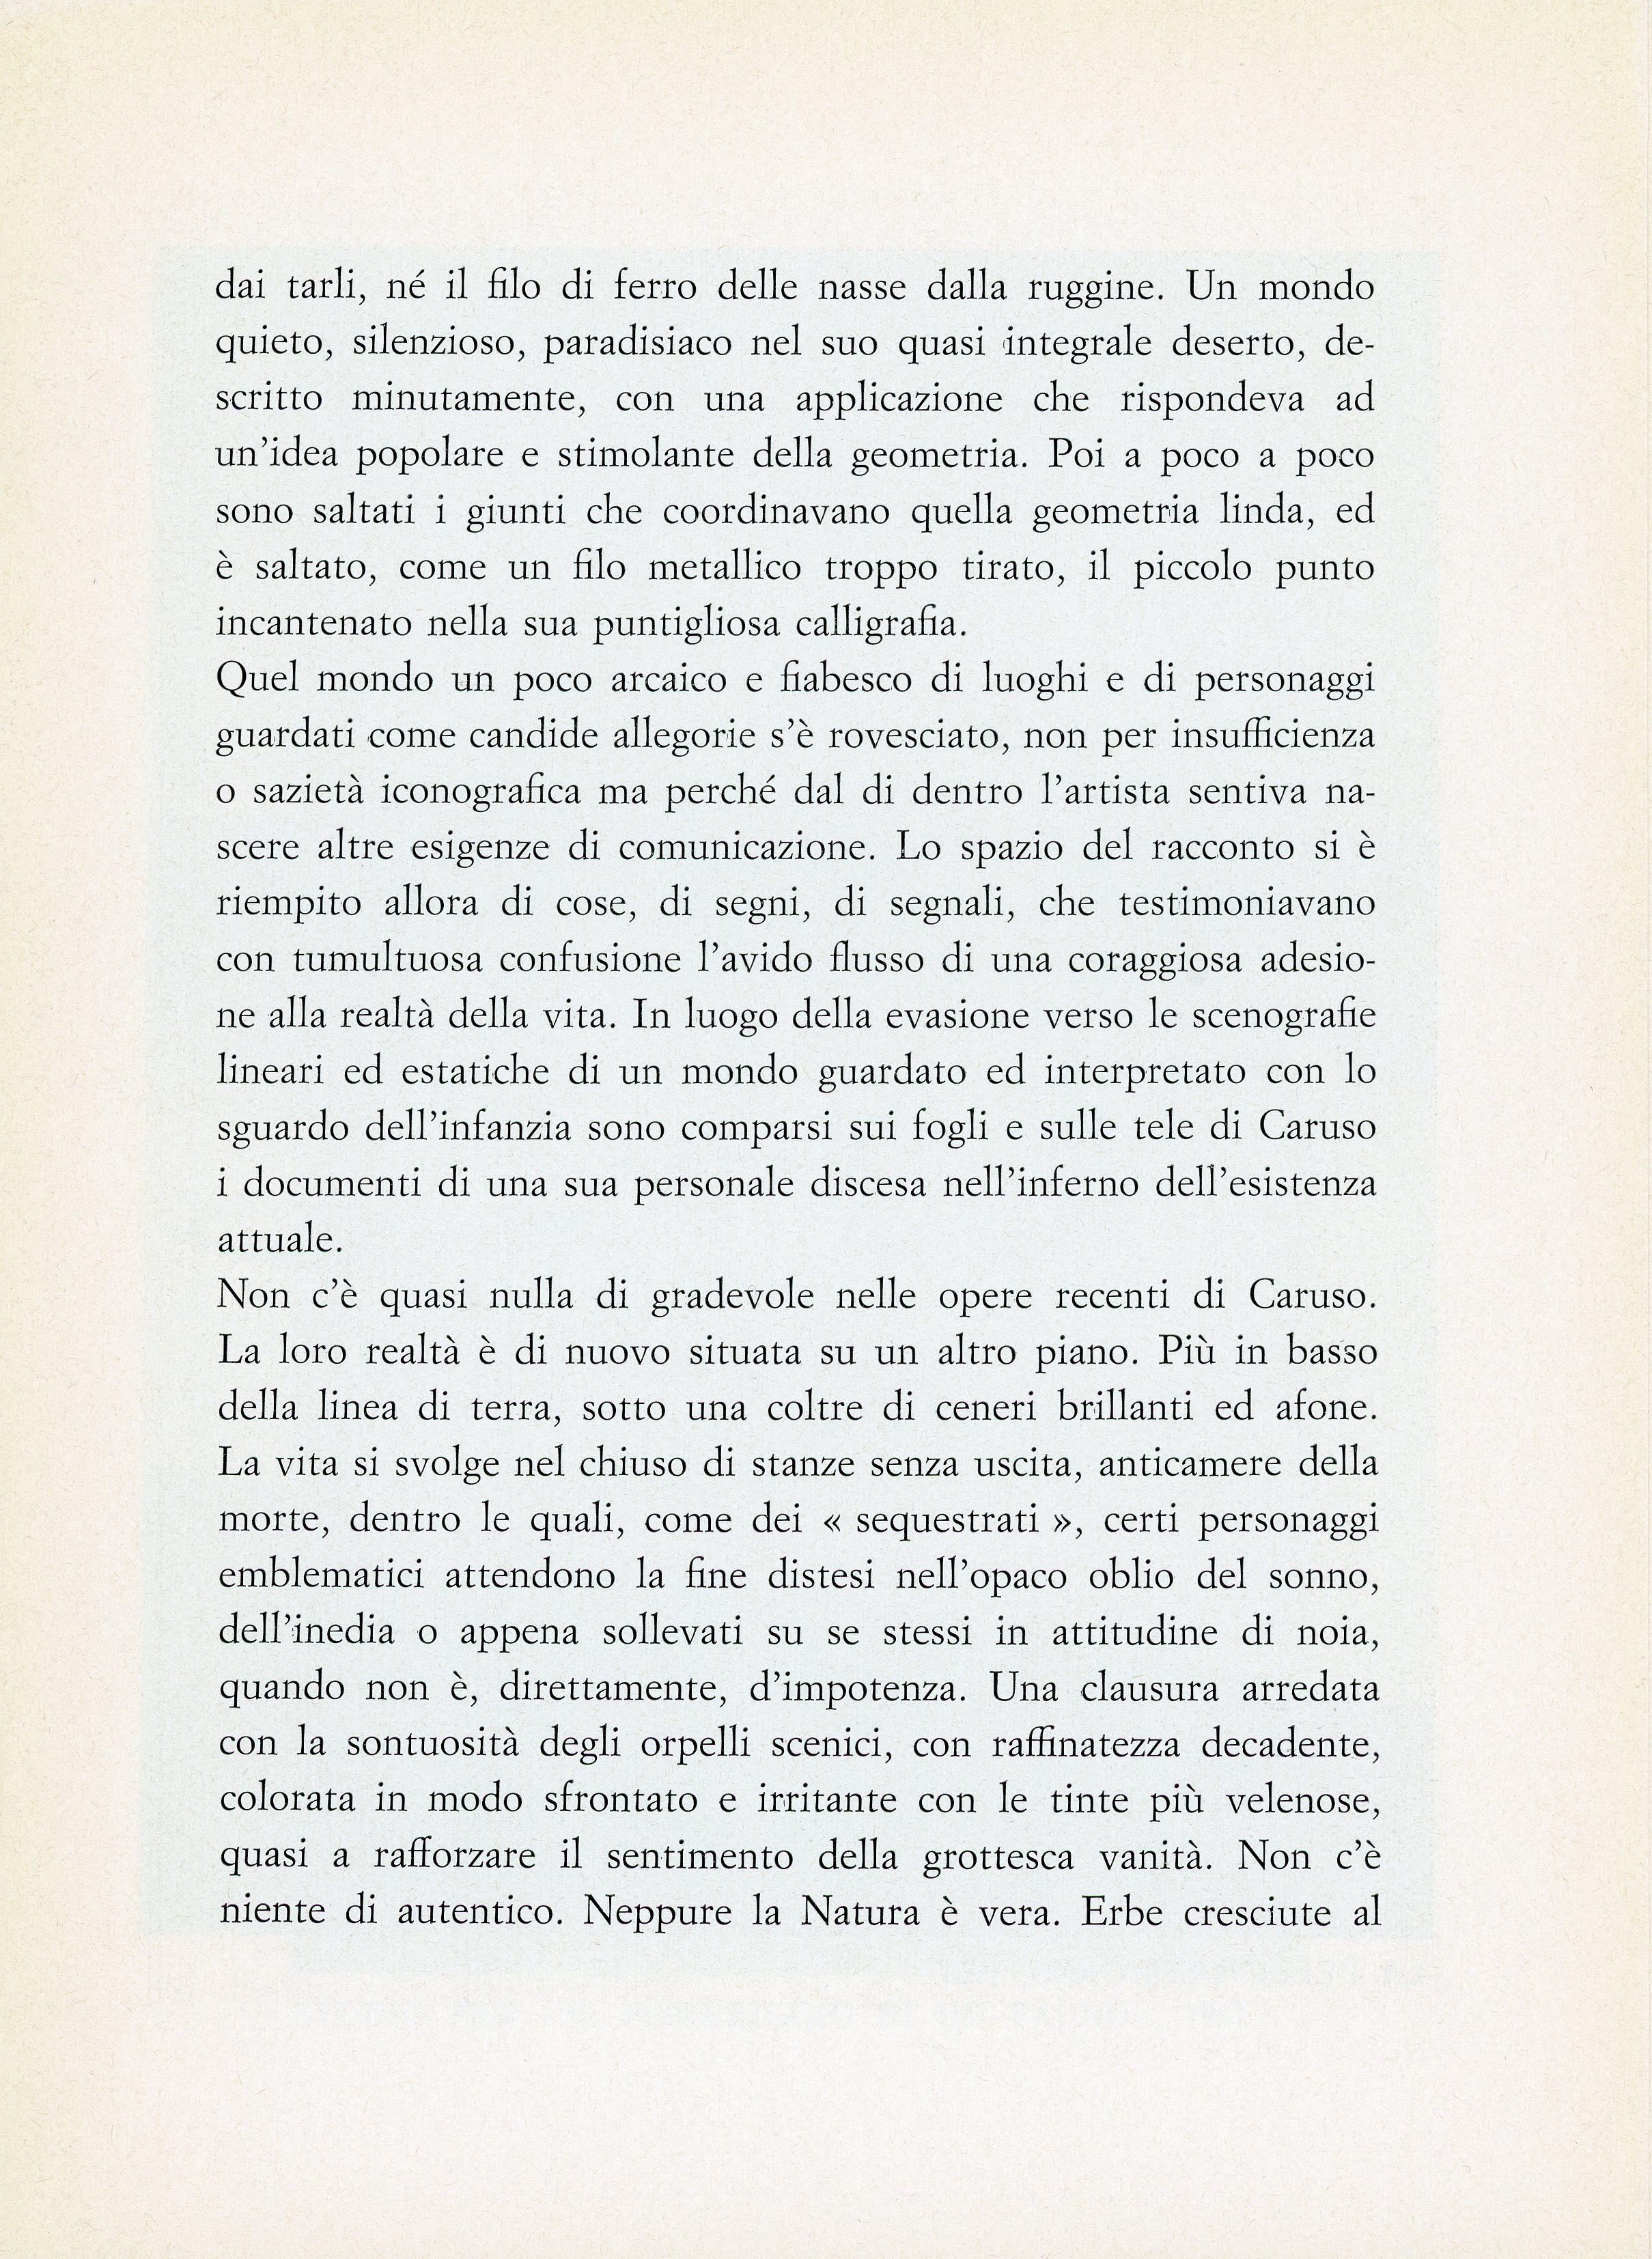 1968-04 Galleria Fant Cagni - Bruno Caruso_06.jpg